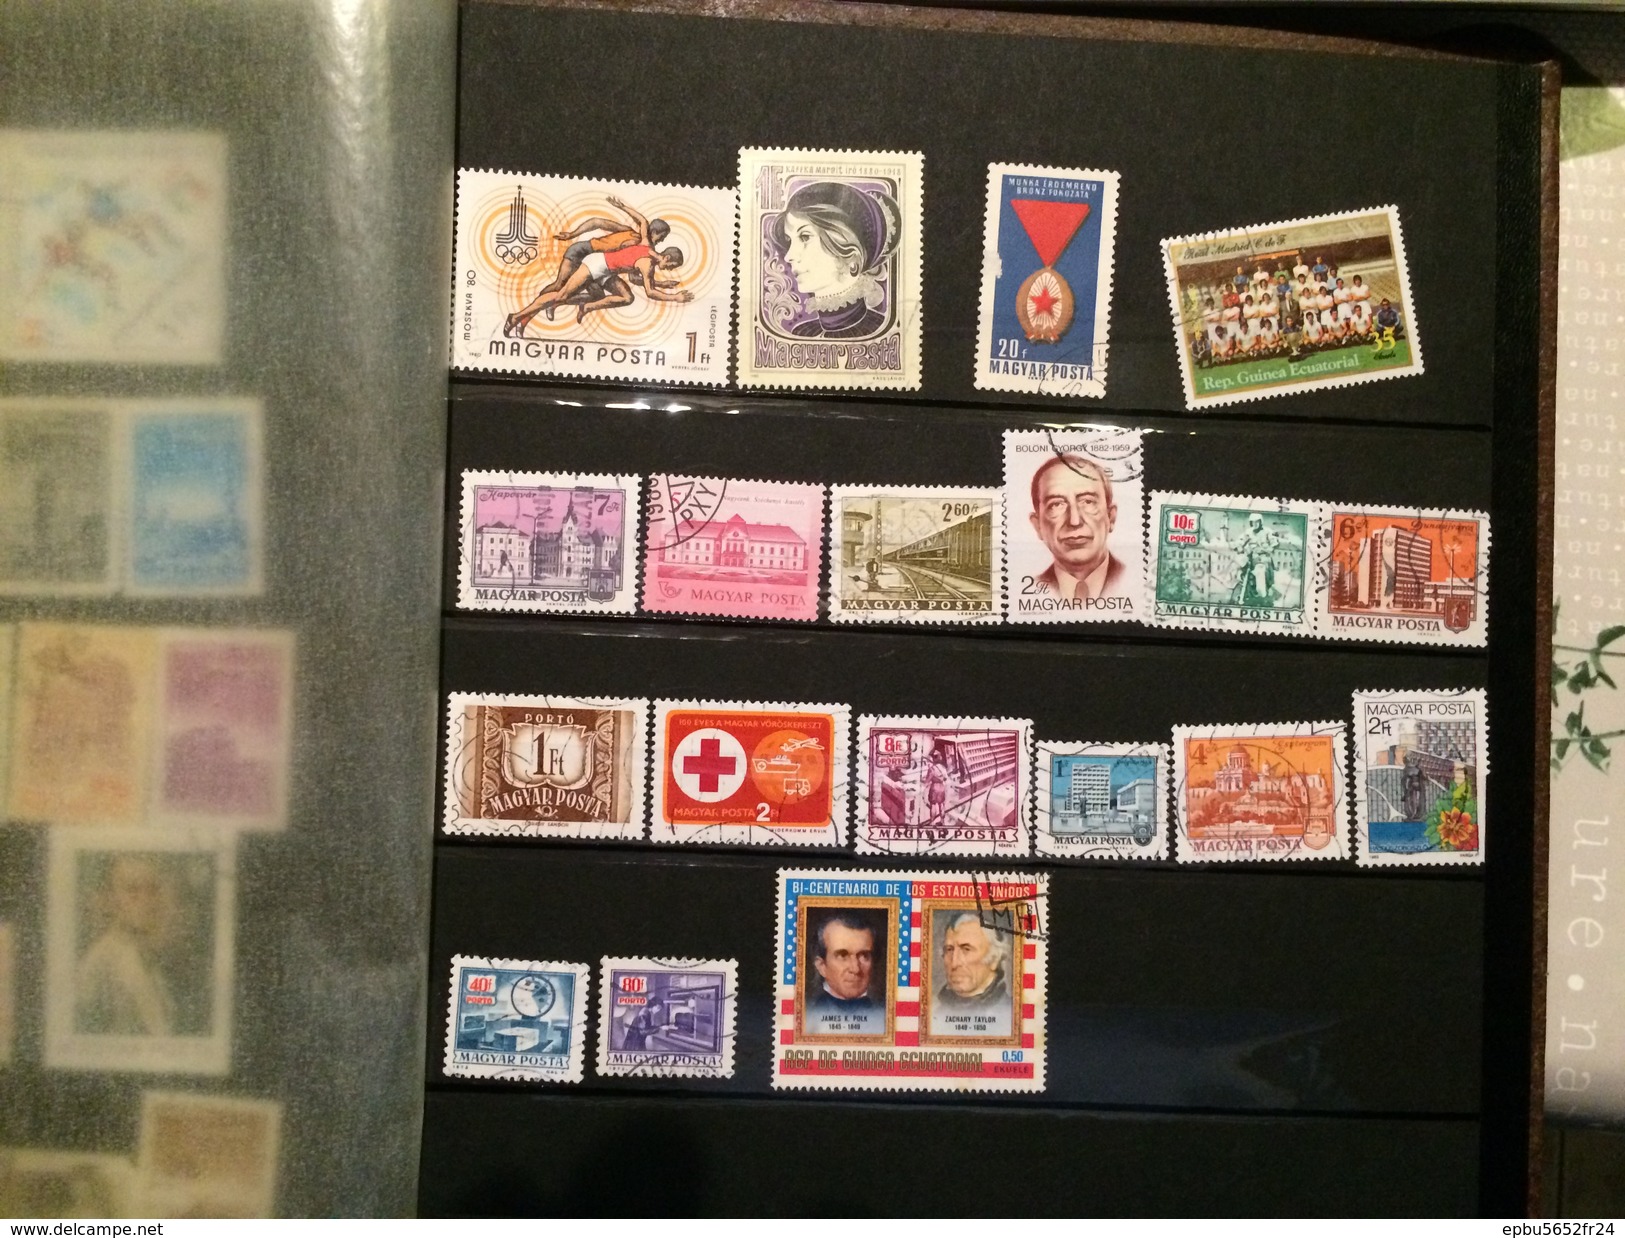 Album de plus de 700 timbres pour la grande majorité etrangers  obliteres ou neufs